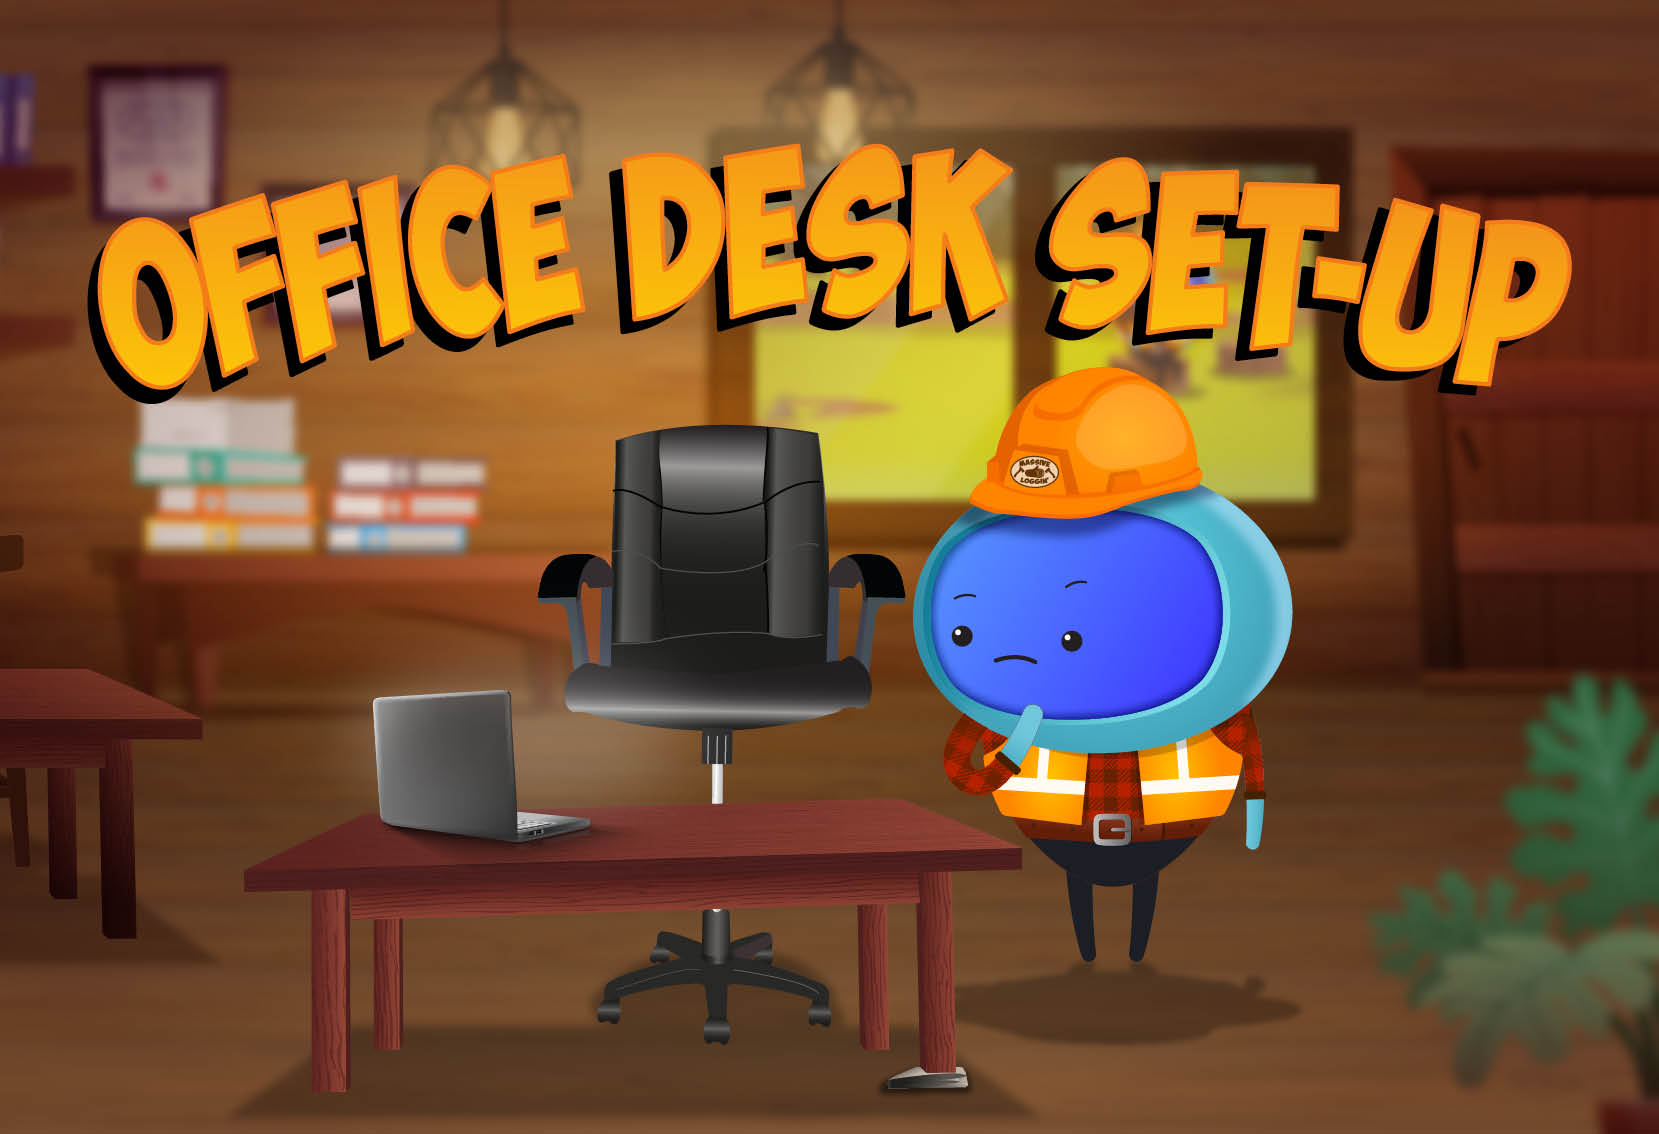 iAM 00209 - Office Desk Set-Up - LMS Thumbnail (1)